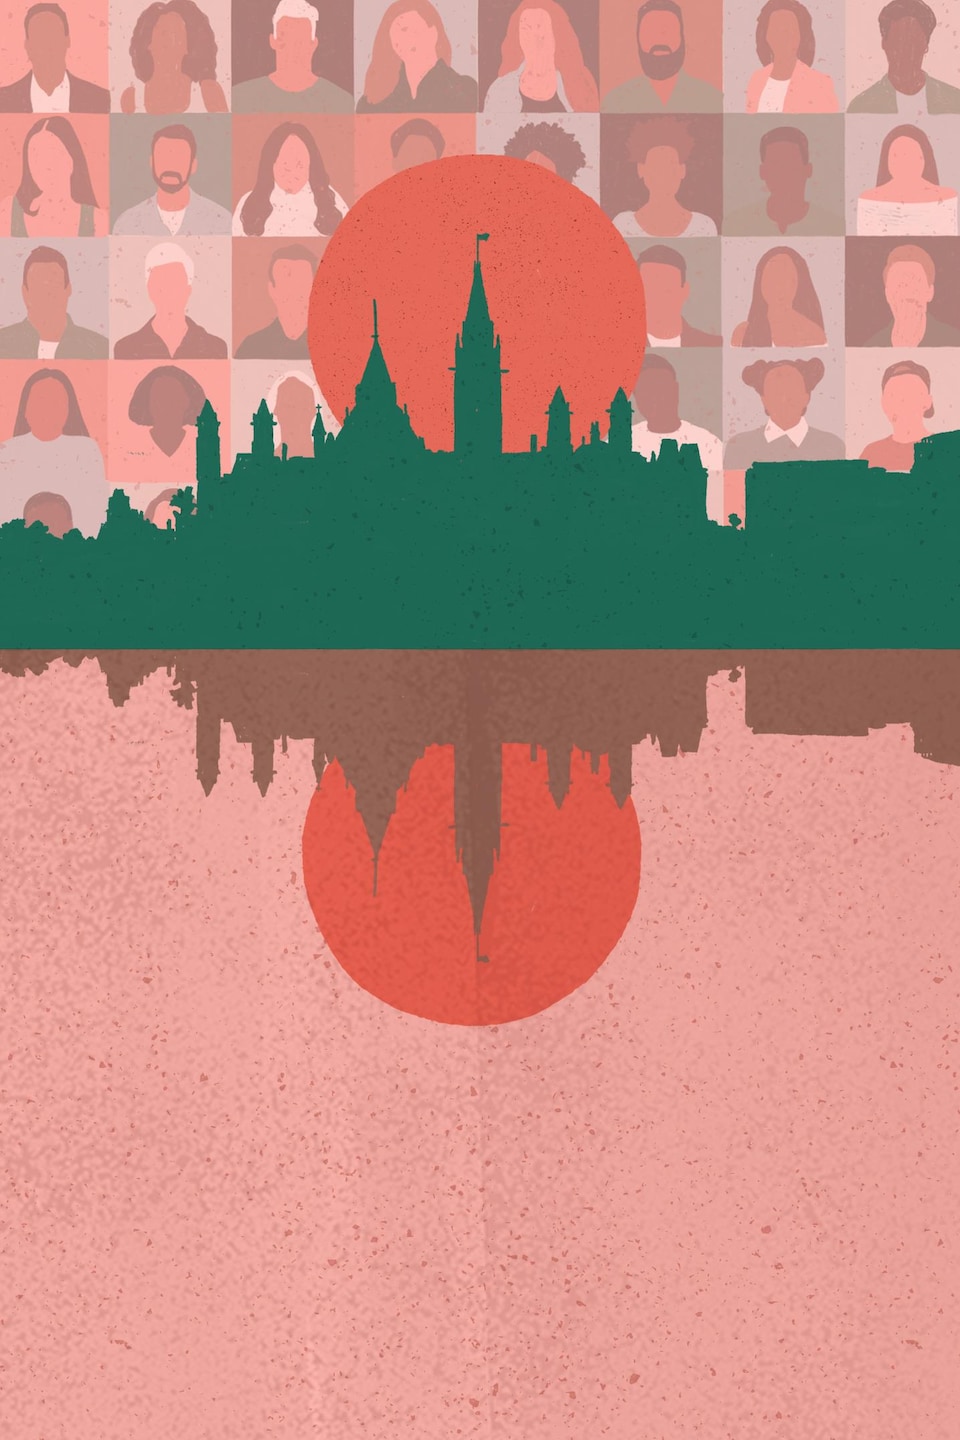 La silhouette de la ville d'Ottawa devant un soleil éclairant une mosaïque de personnes issues de la diversité.